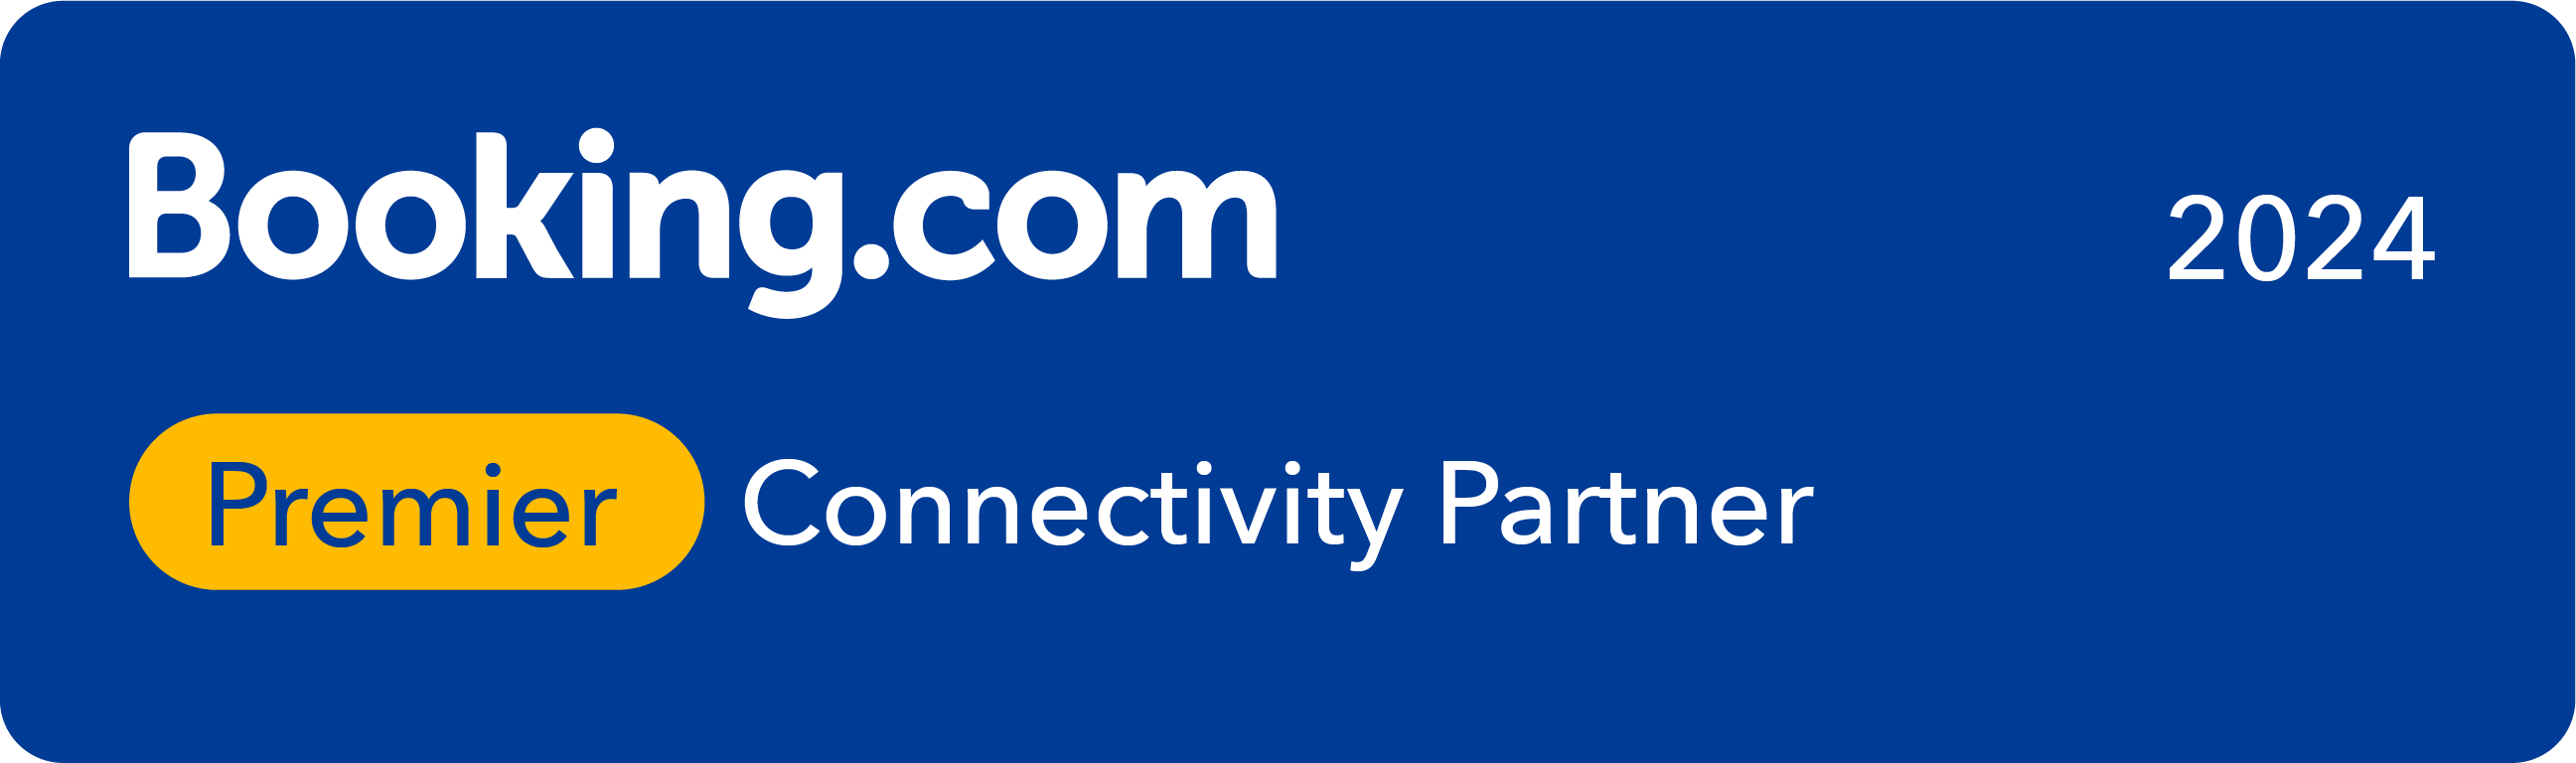 Booking.com Premier Connectivity Partner